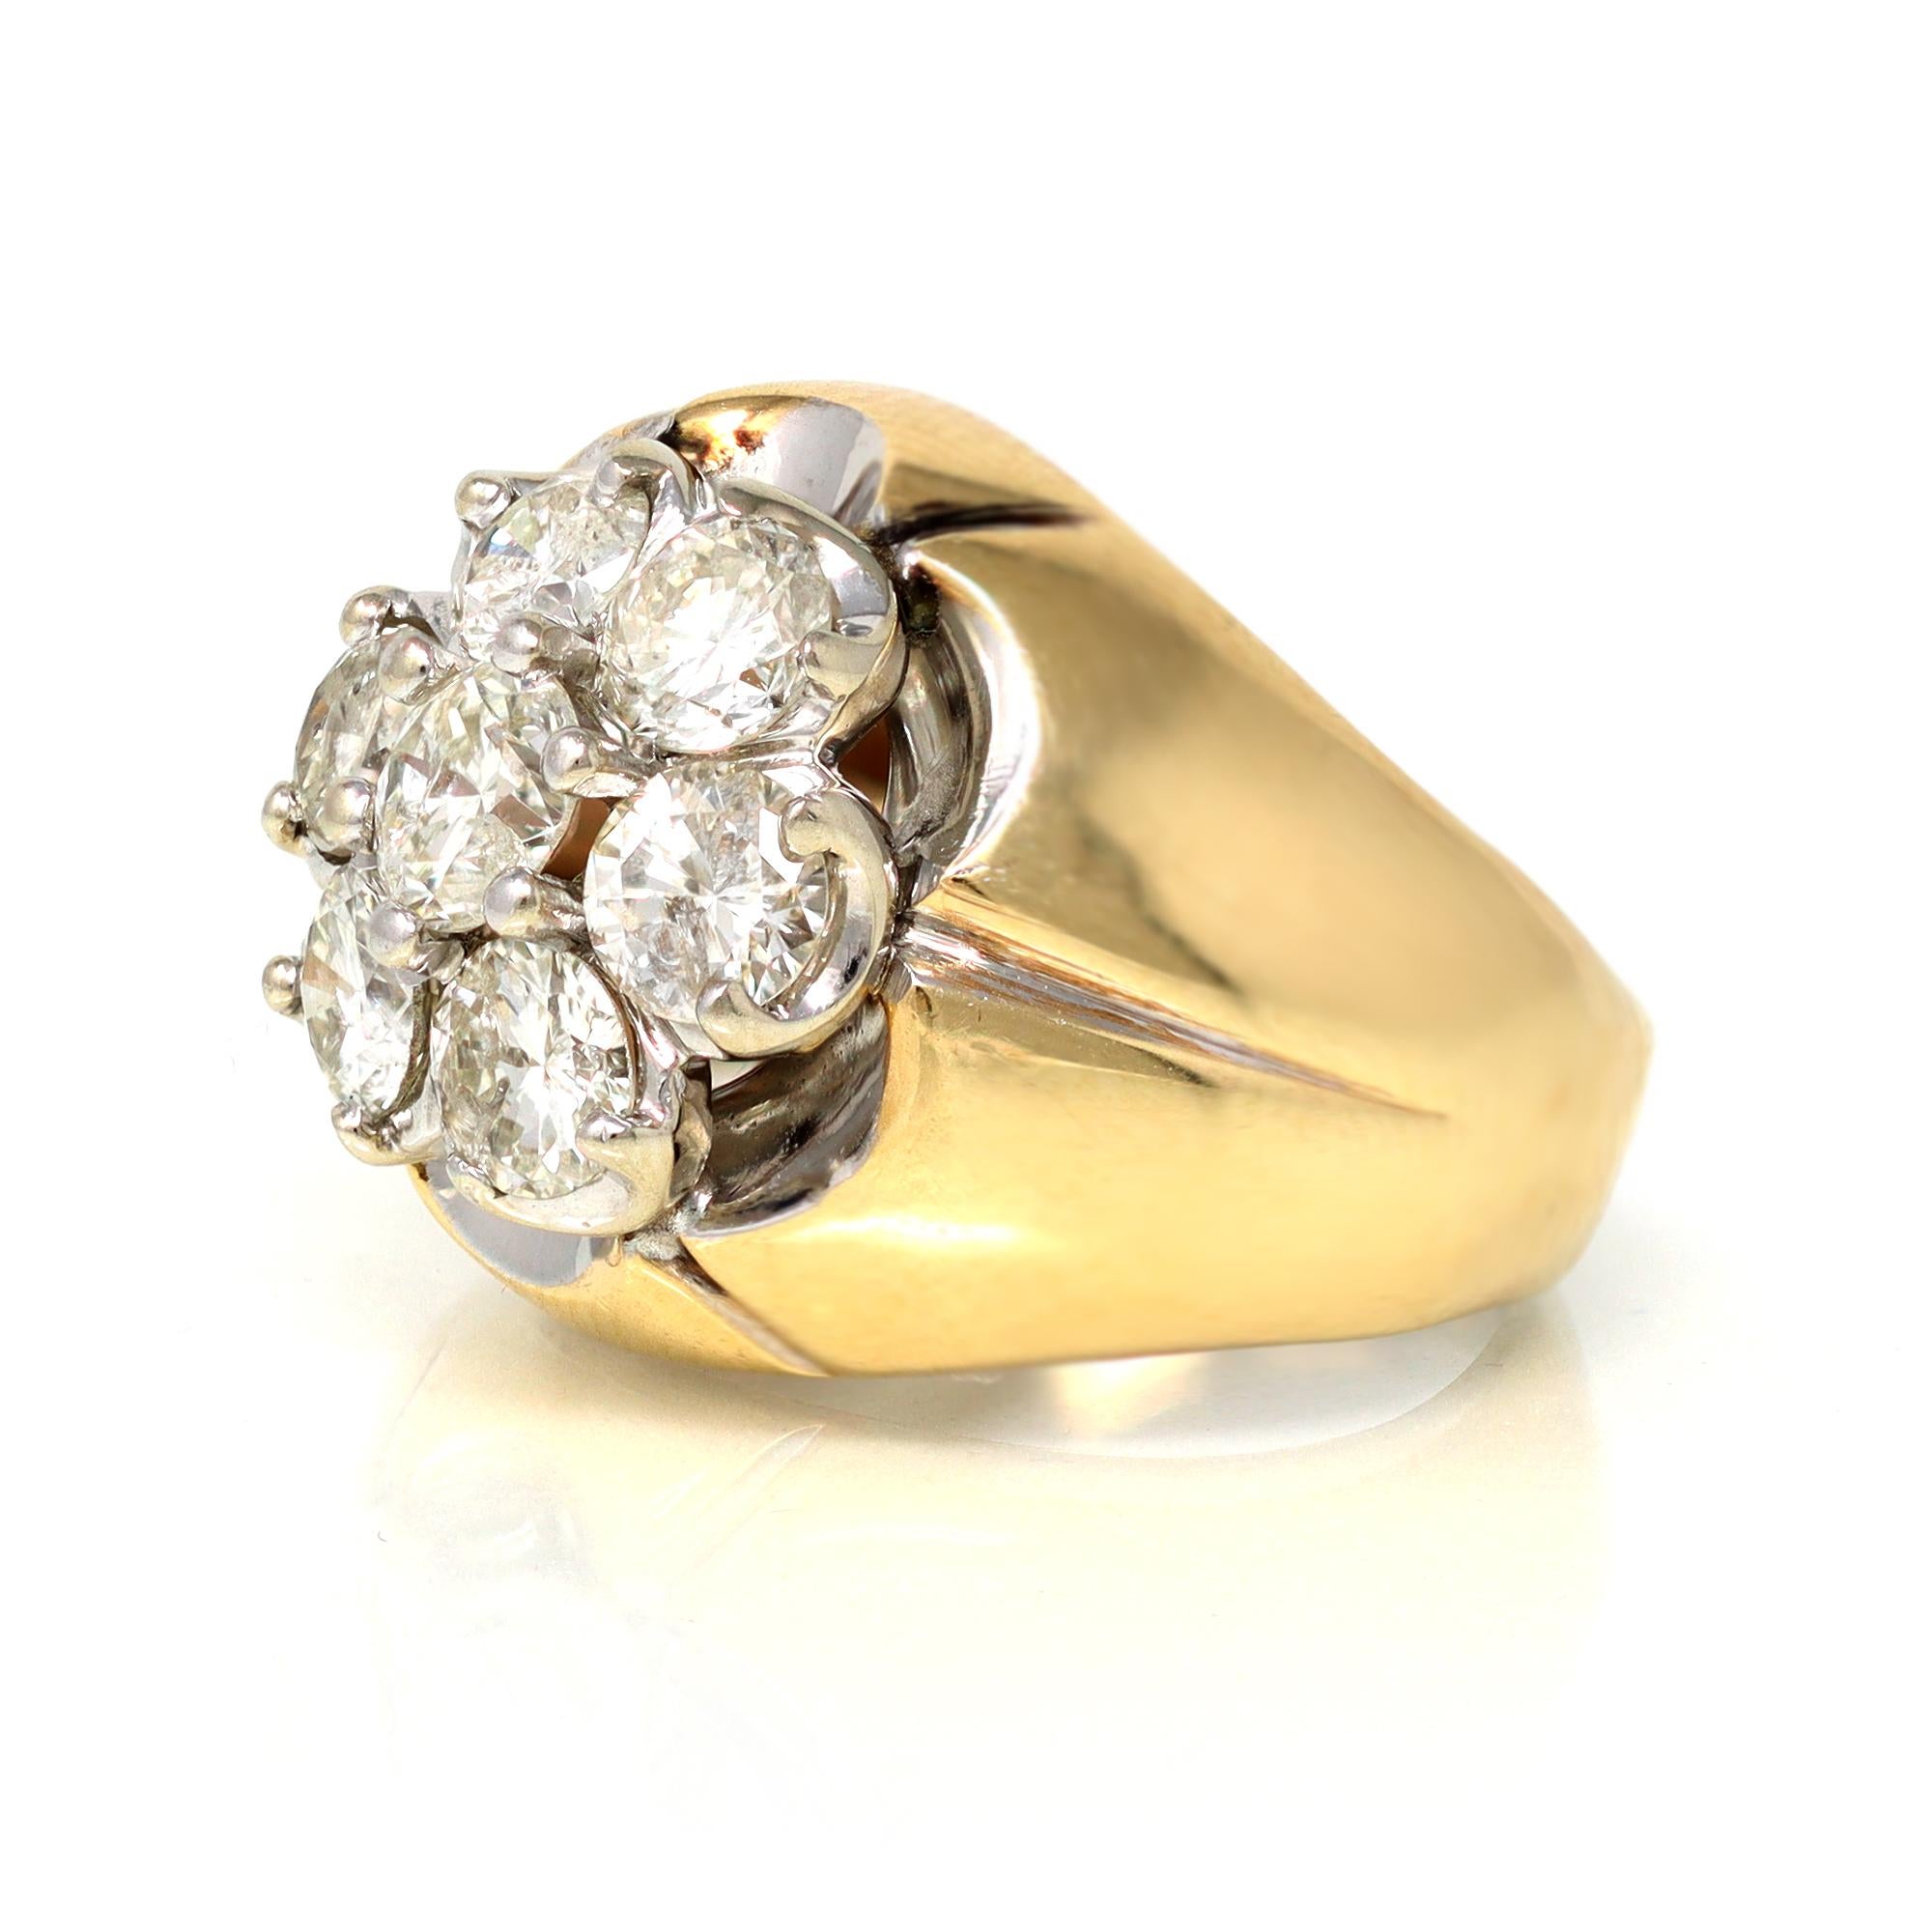 Der beeindruckende Cluster-Diamantring stammt aus der Zeit um 1950. Sie ist in zweifarbigem 14-karätigem Gelb- und Weißgold gehalten. Es handelt sich um sieben Diamanten von je etwa 0,35 Karat, mit einem geschätzten Gesamtkaratgewicht von 2,40